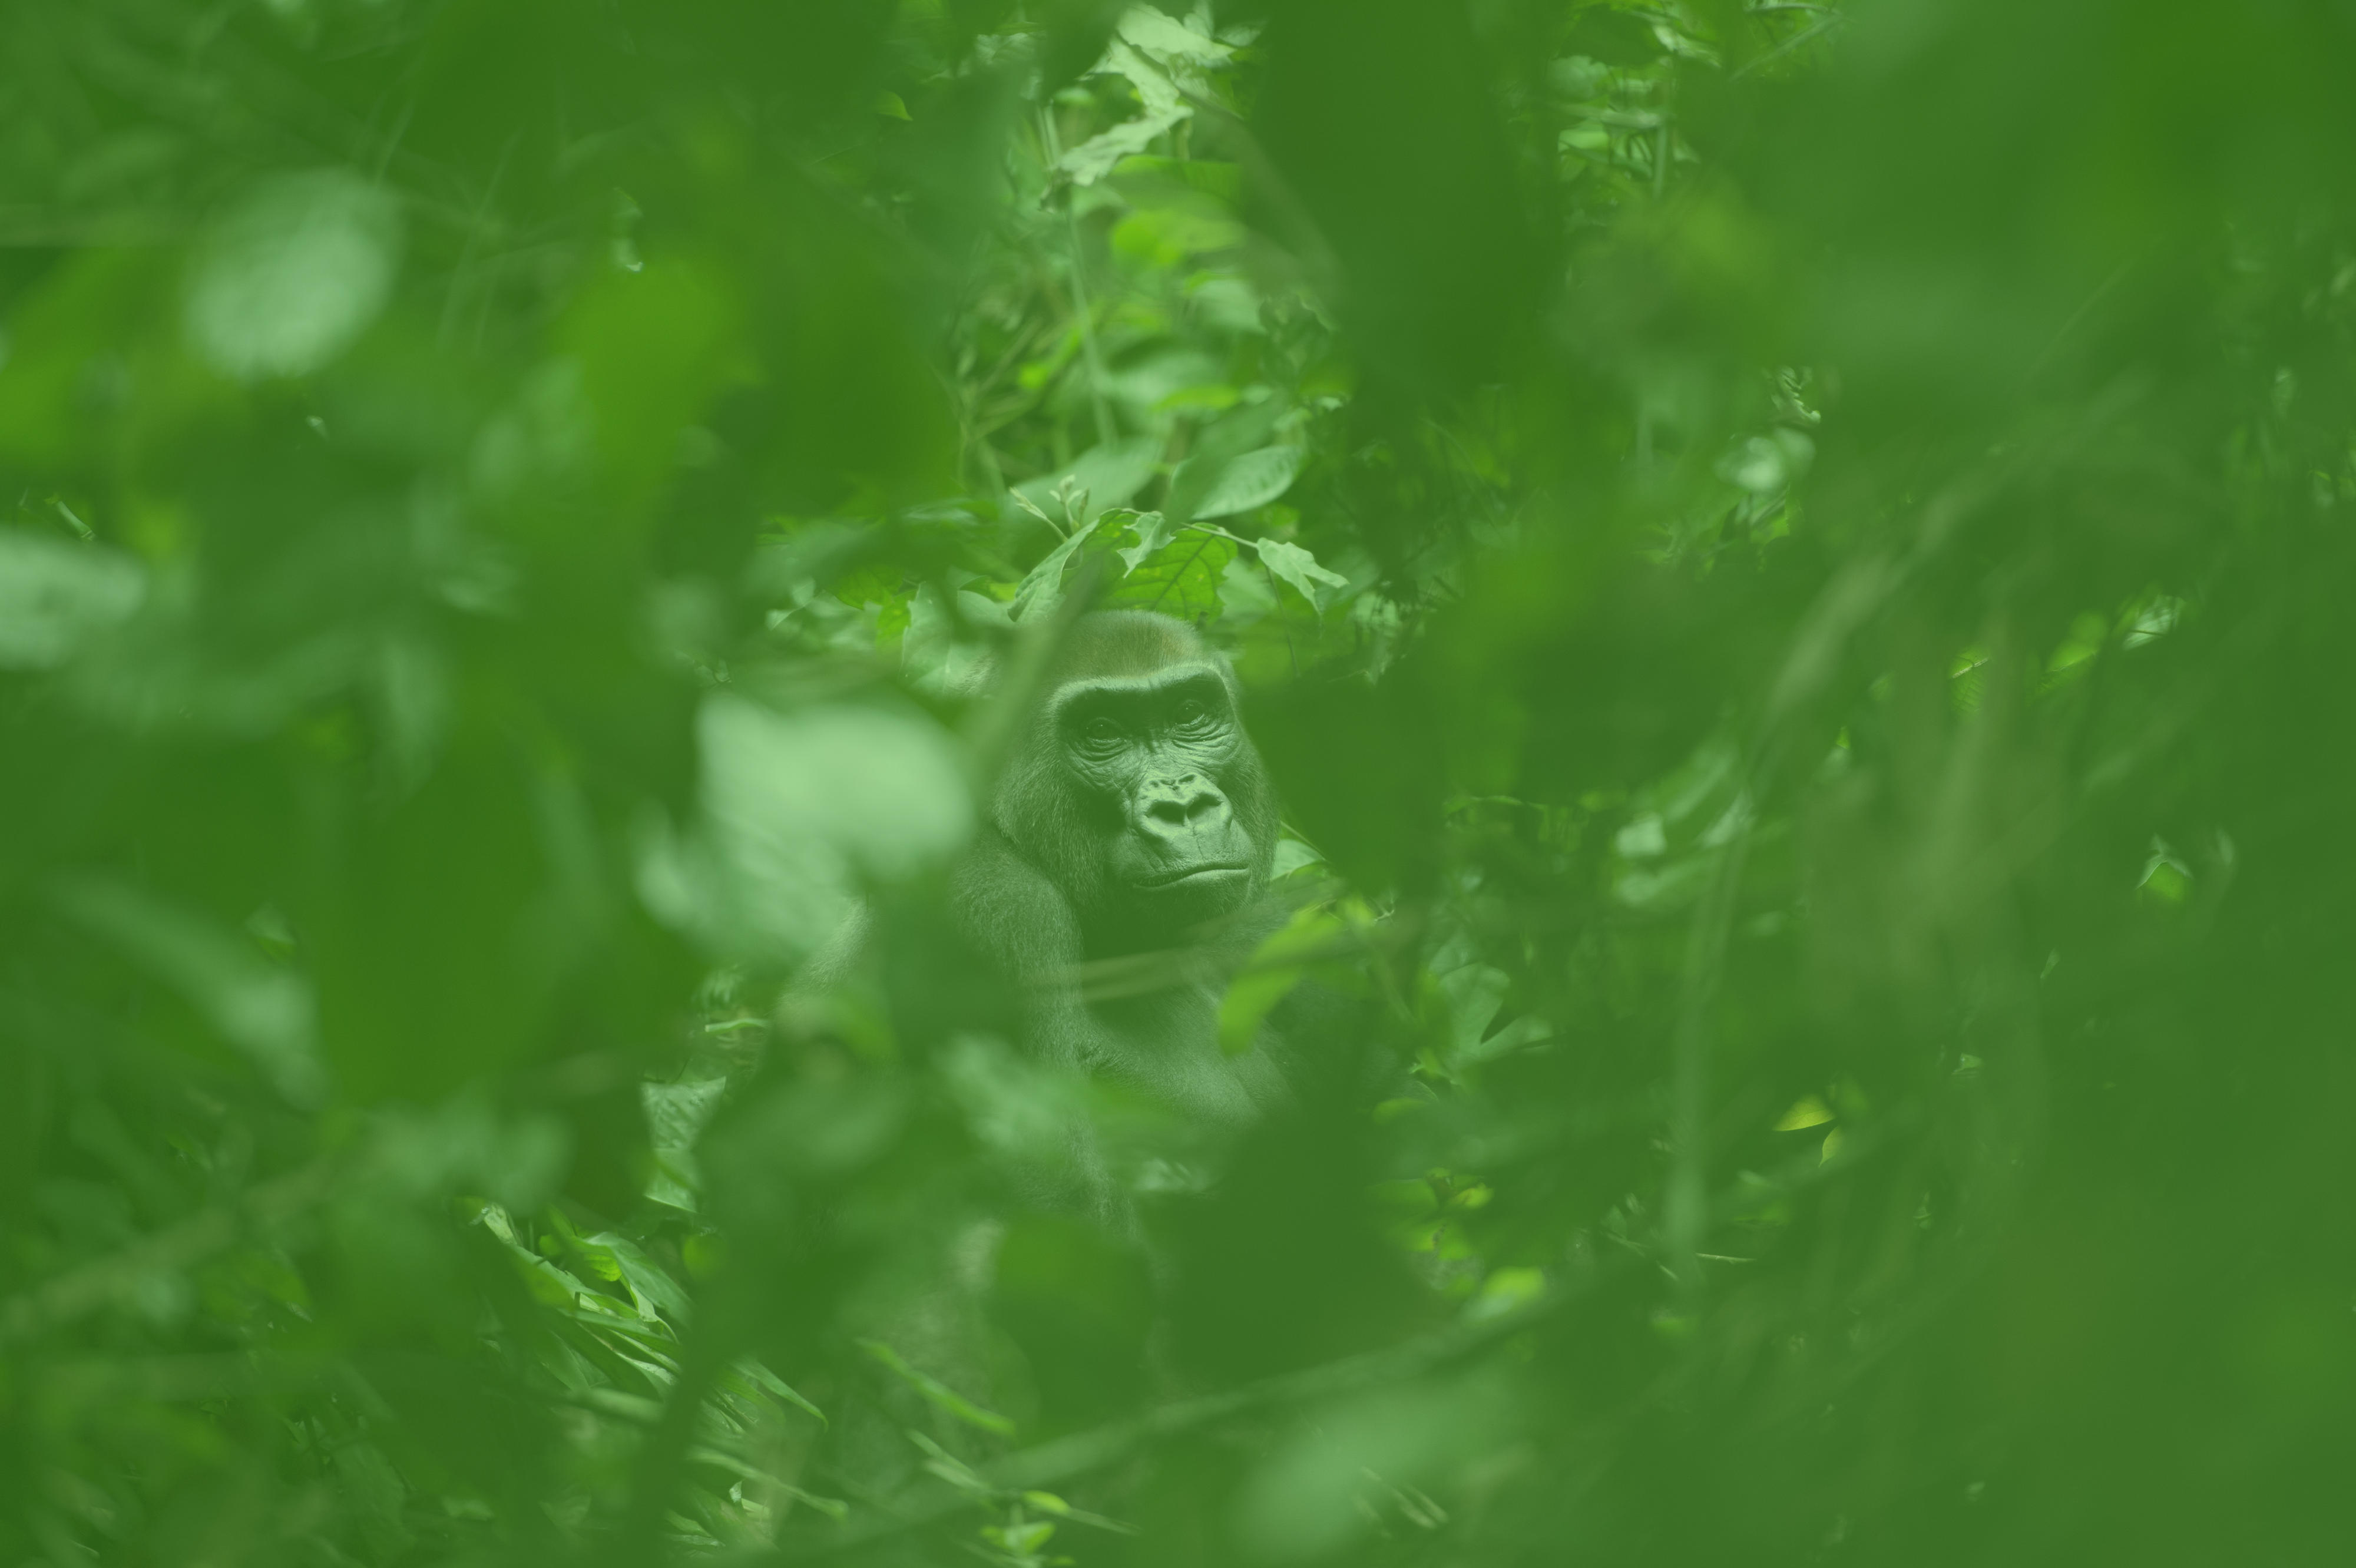 Ein Western Lowland Gorilla im Dzanga-Nationalpark im Dreiländereck Kongo, Kamerun und Zentralafrikanische Republik